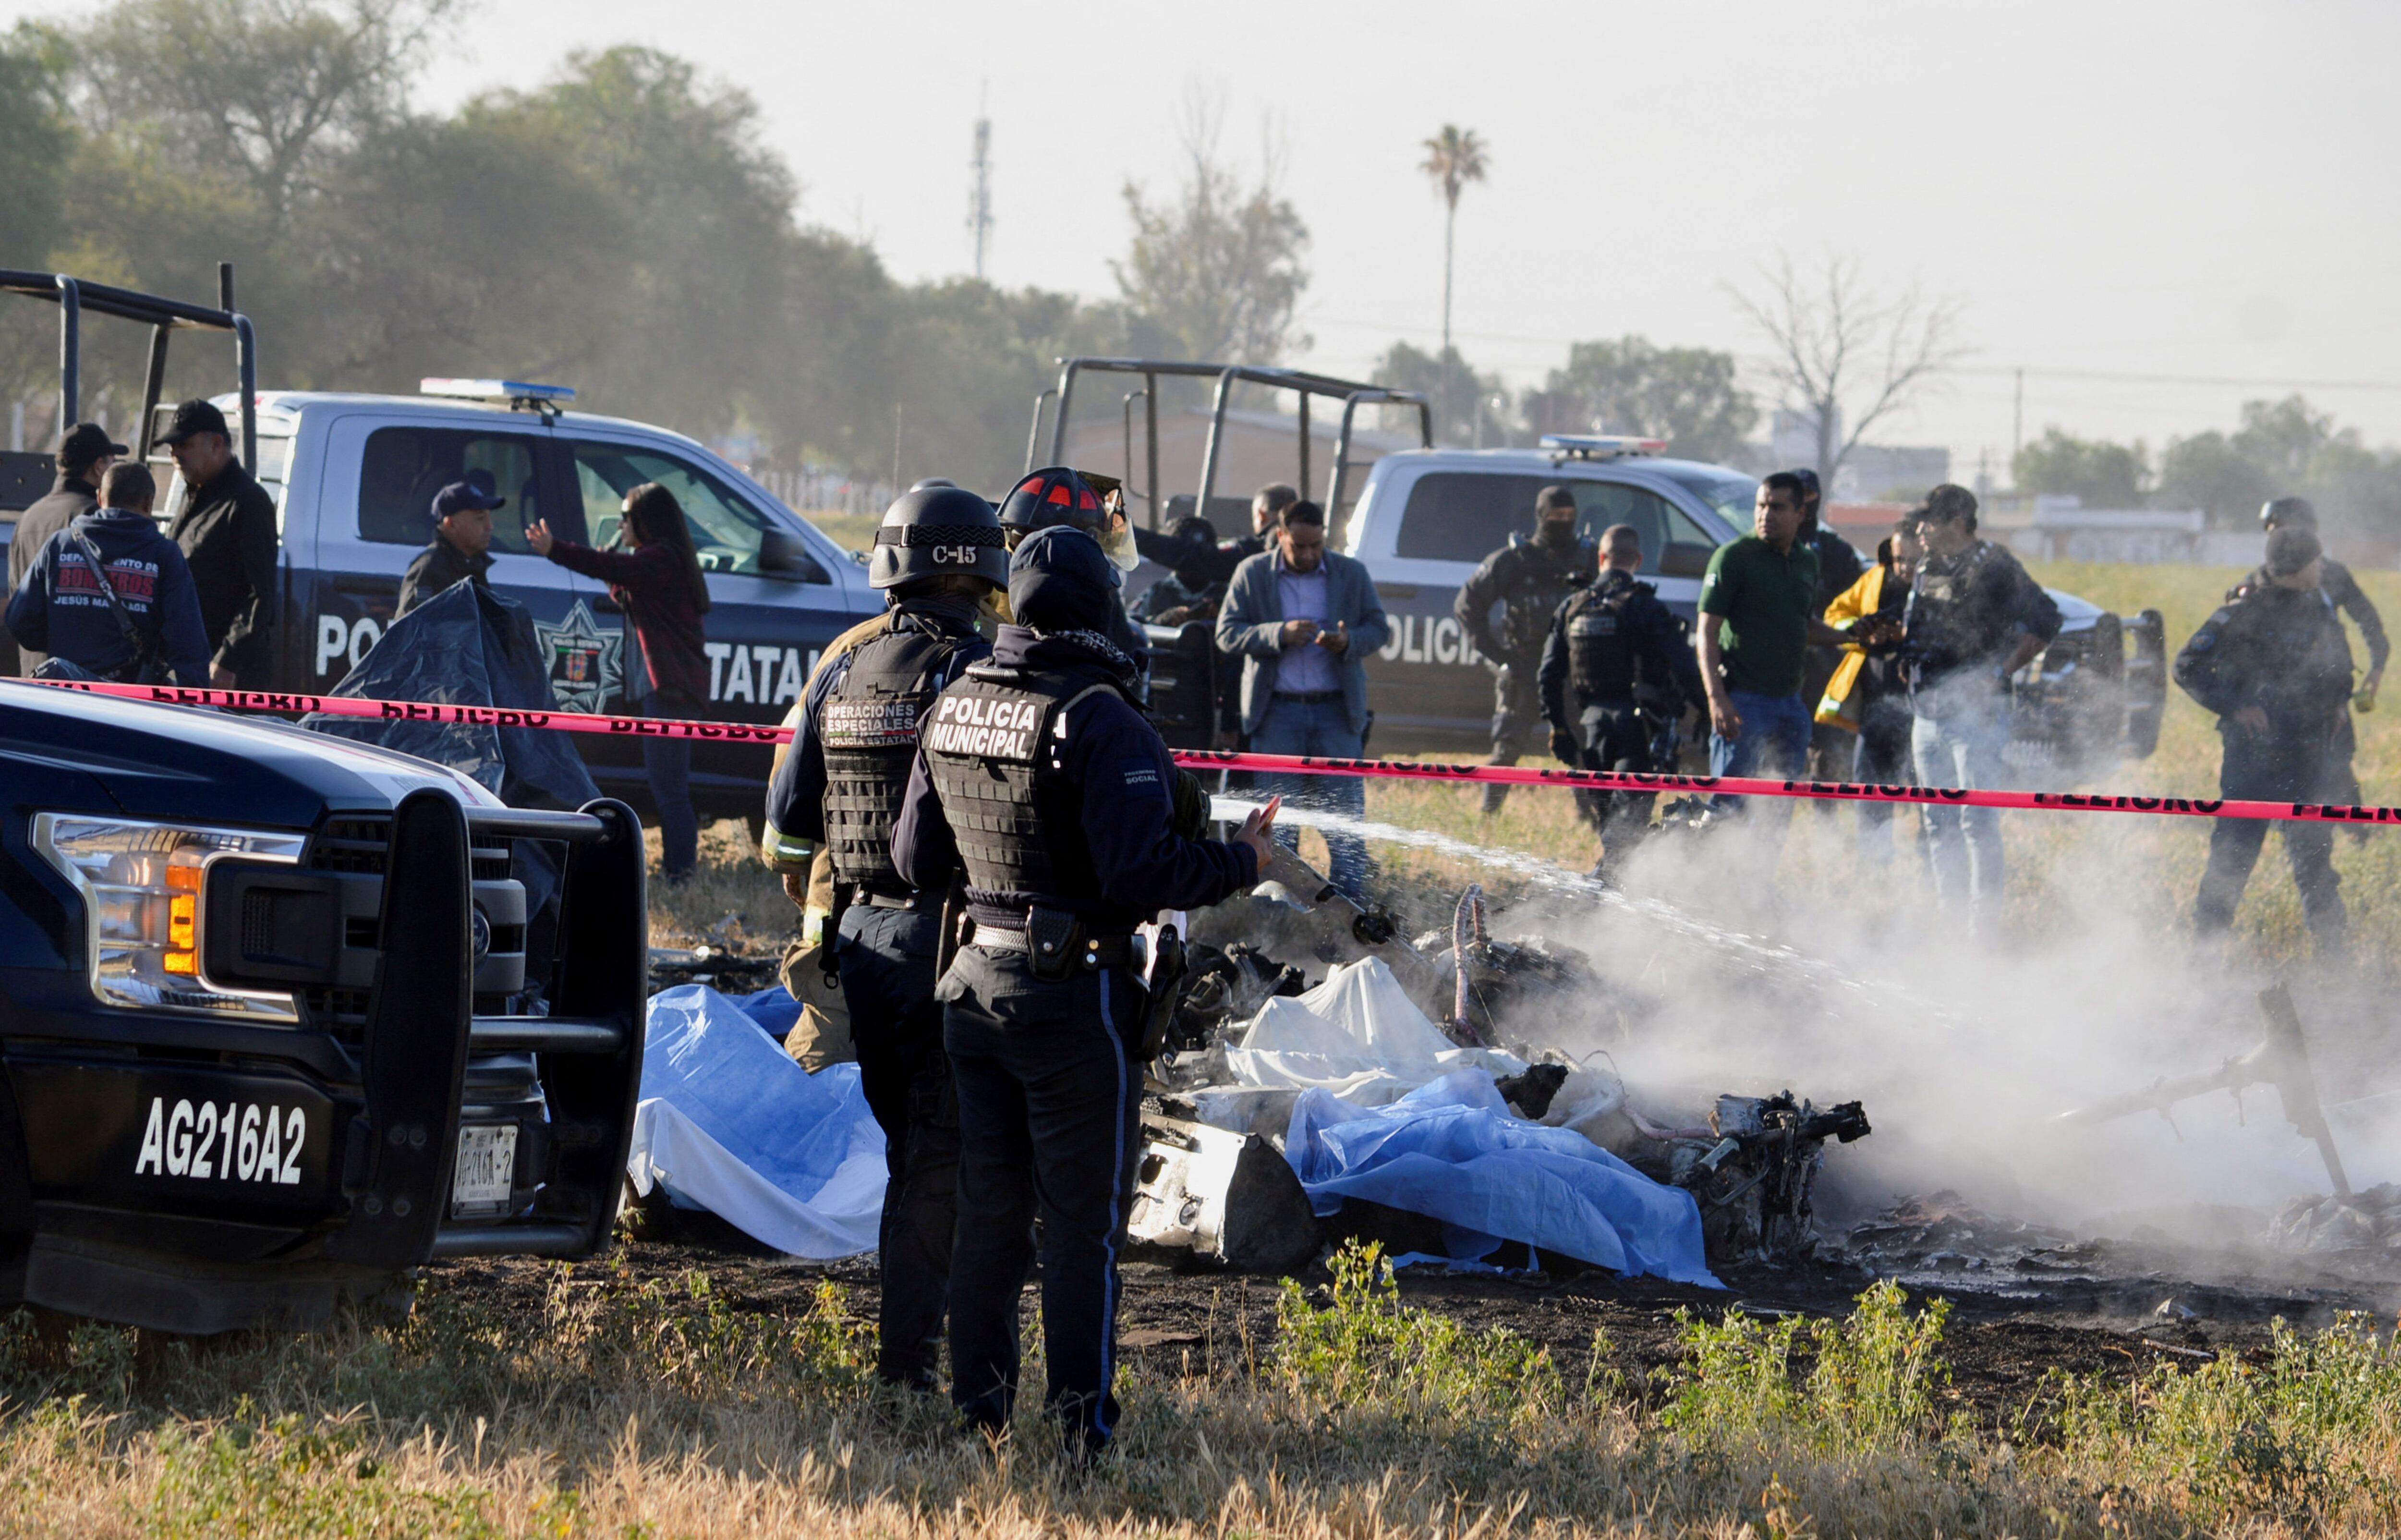 La FGR indicó que luego del accidente se abrió una carpeta de investigación (Foto: REUTERS/Liberto Urena)